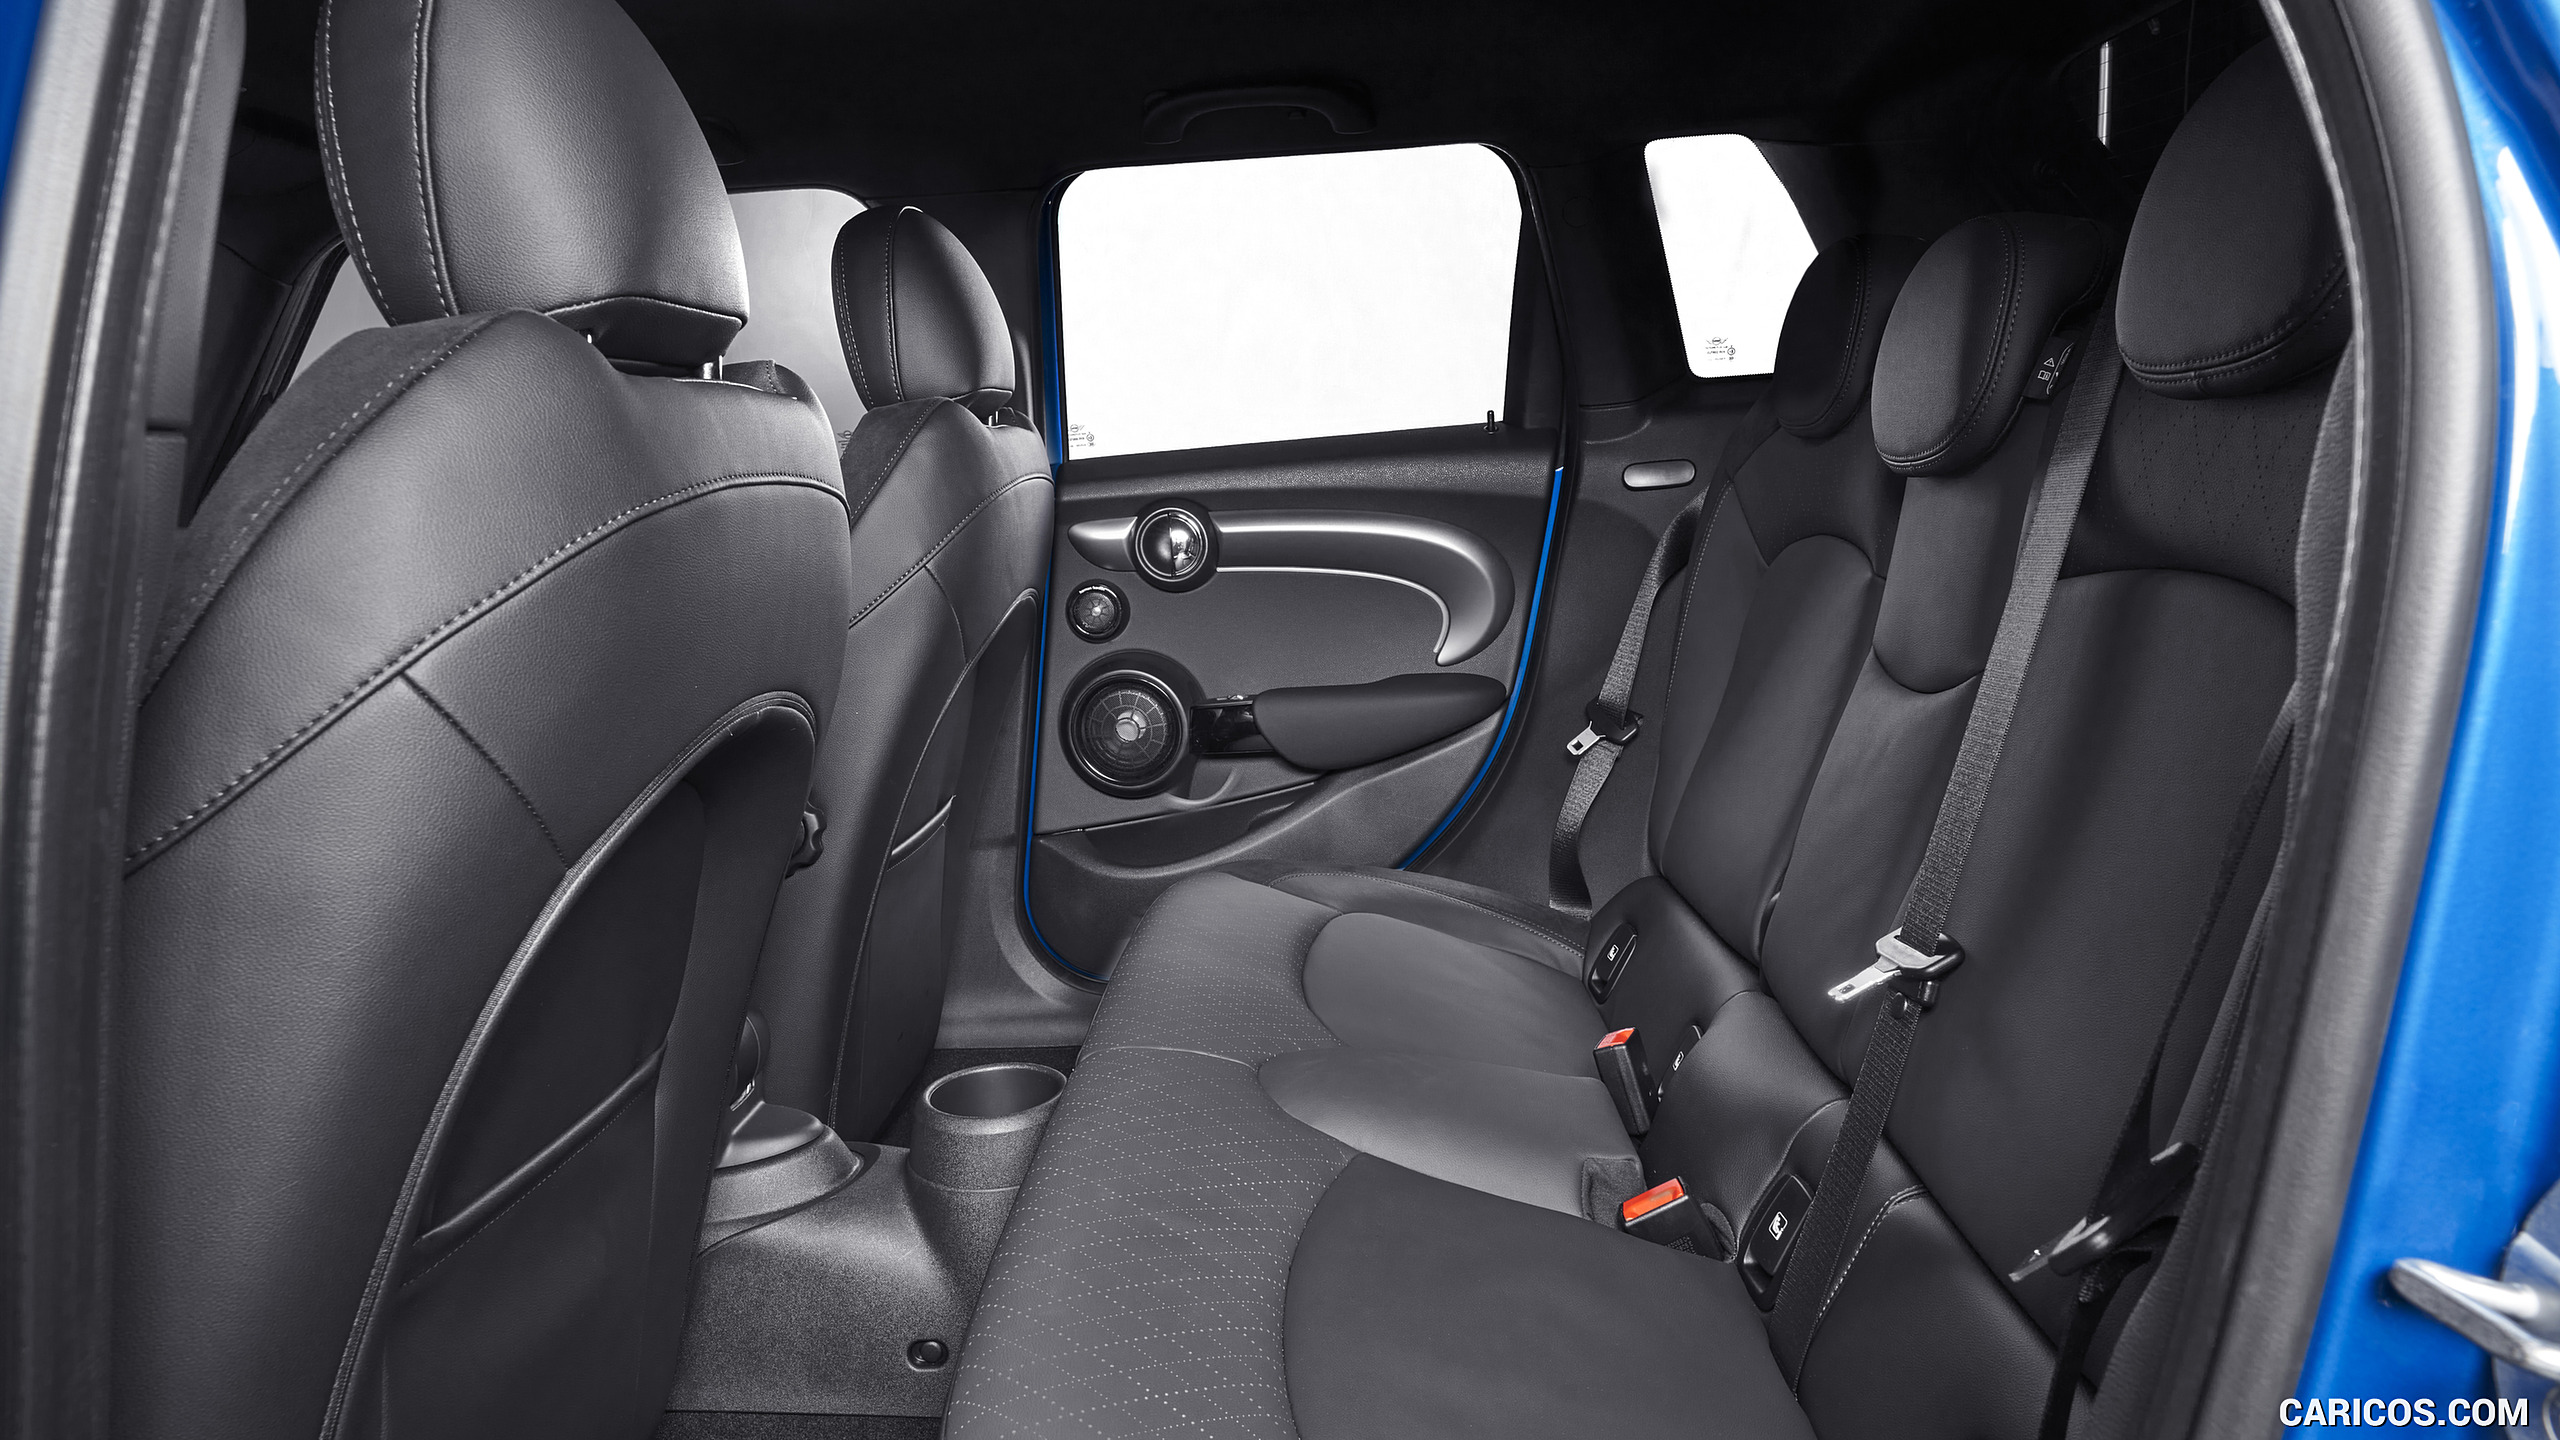 2022 MINI Cooper S Hardtop 4 Door - Interior, Rear Seats, #33 of 33